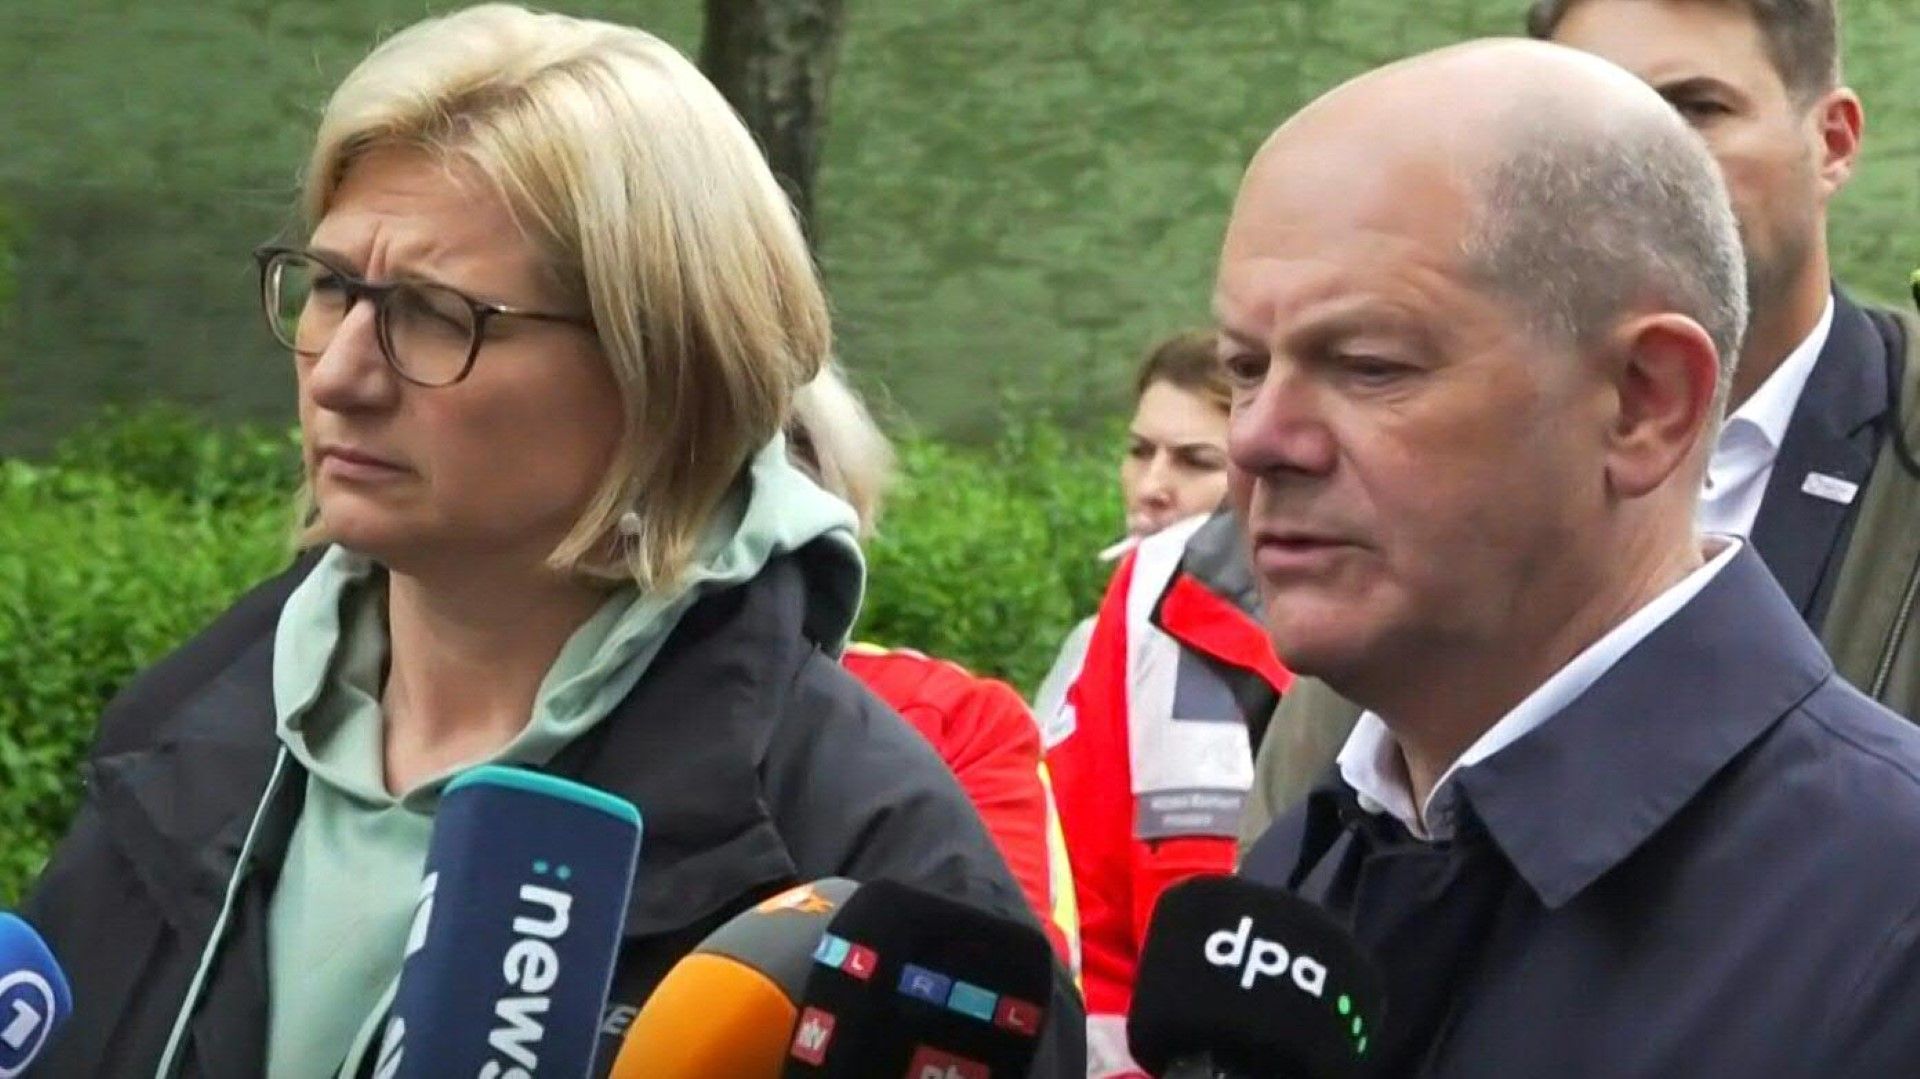 Hochwasser im Saarland: Scholz lobt Zusammenarbeit und Solidarität